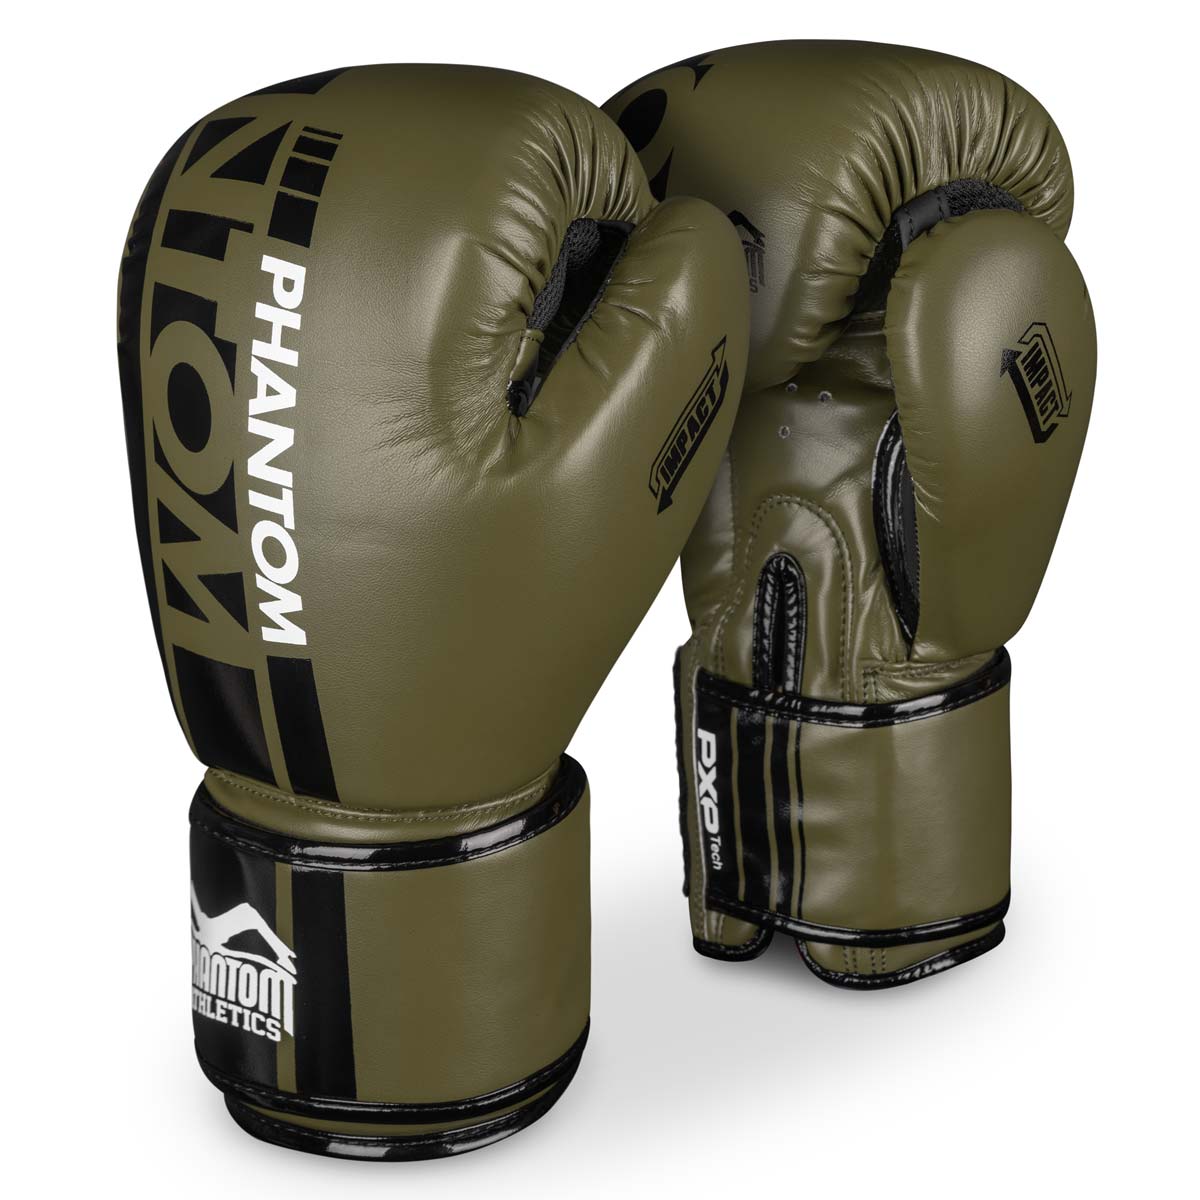 Phantom boxerské rukavice APEX Army Green pre tréning bojových umení